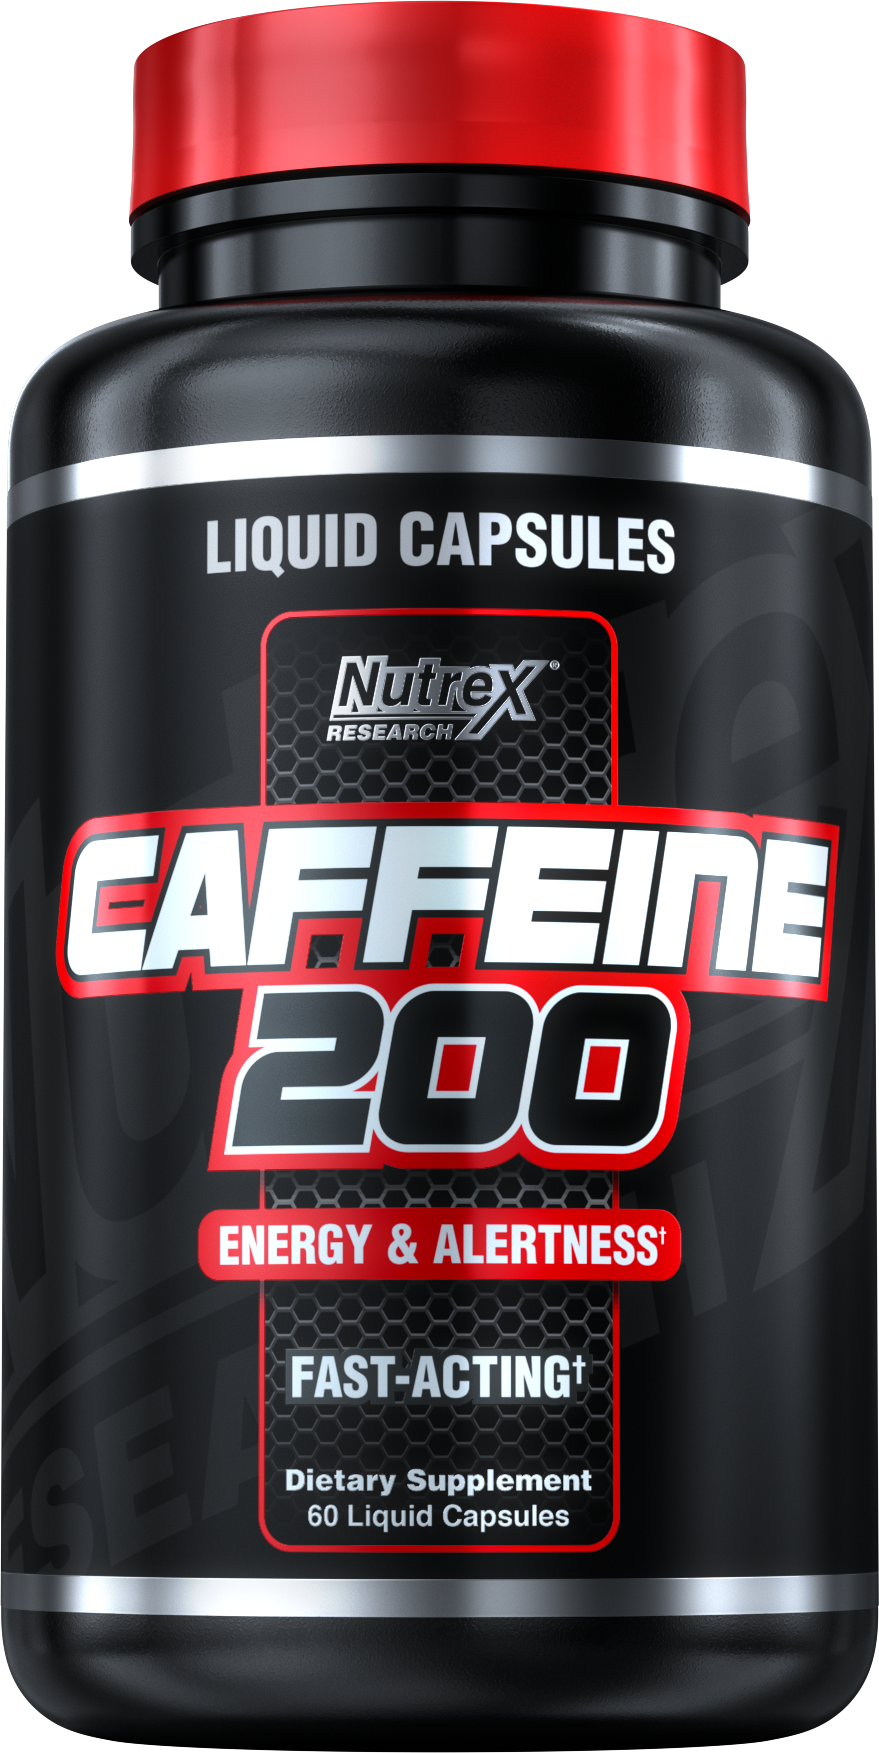 Спортпит Caffeine 200. Nutrex Caffeine 200 (60 кап). Кофеин спортпит. Кофеин в таблетках спортивное питание.